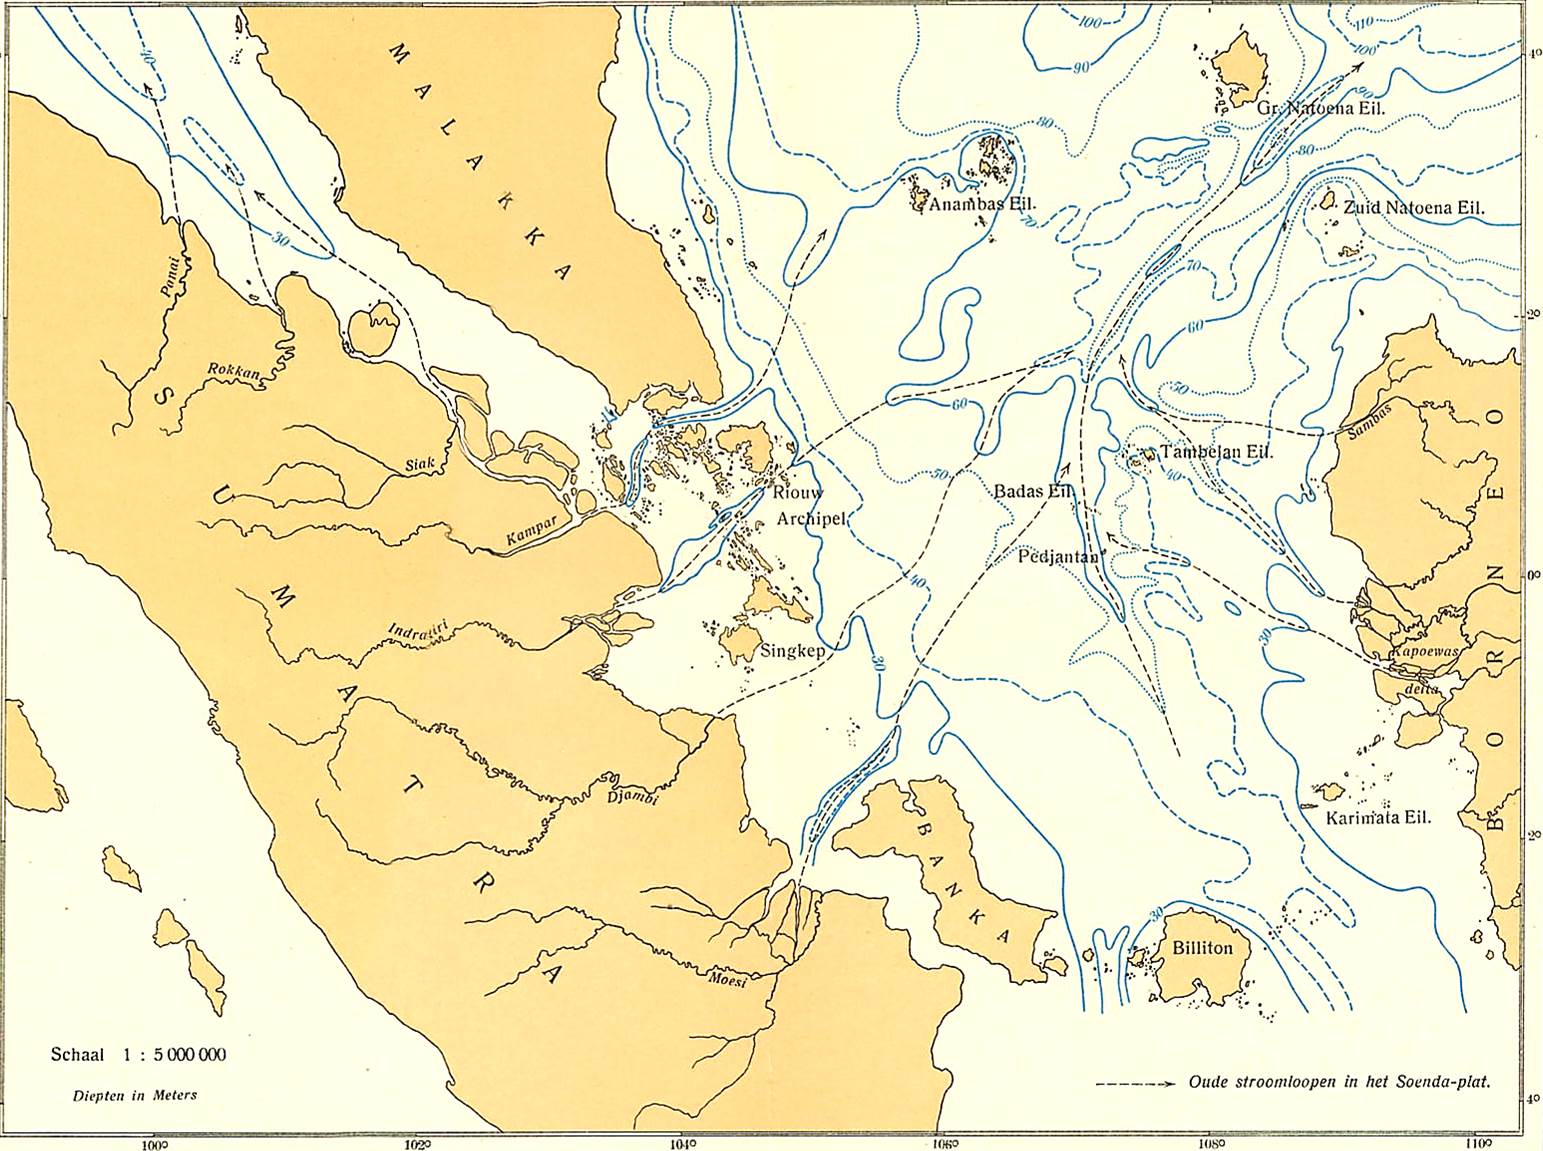 Drowned Pleistocene incised river valleys on Sunda Shelf